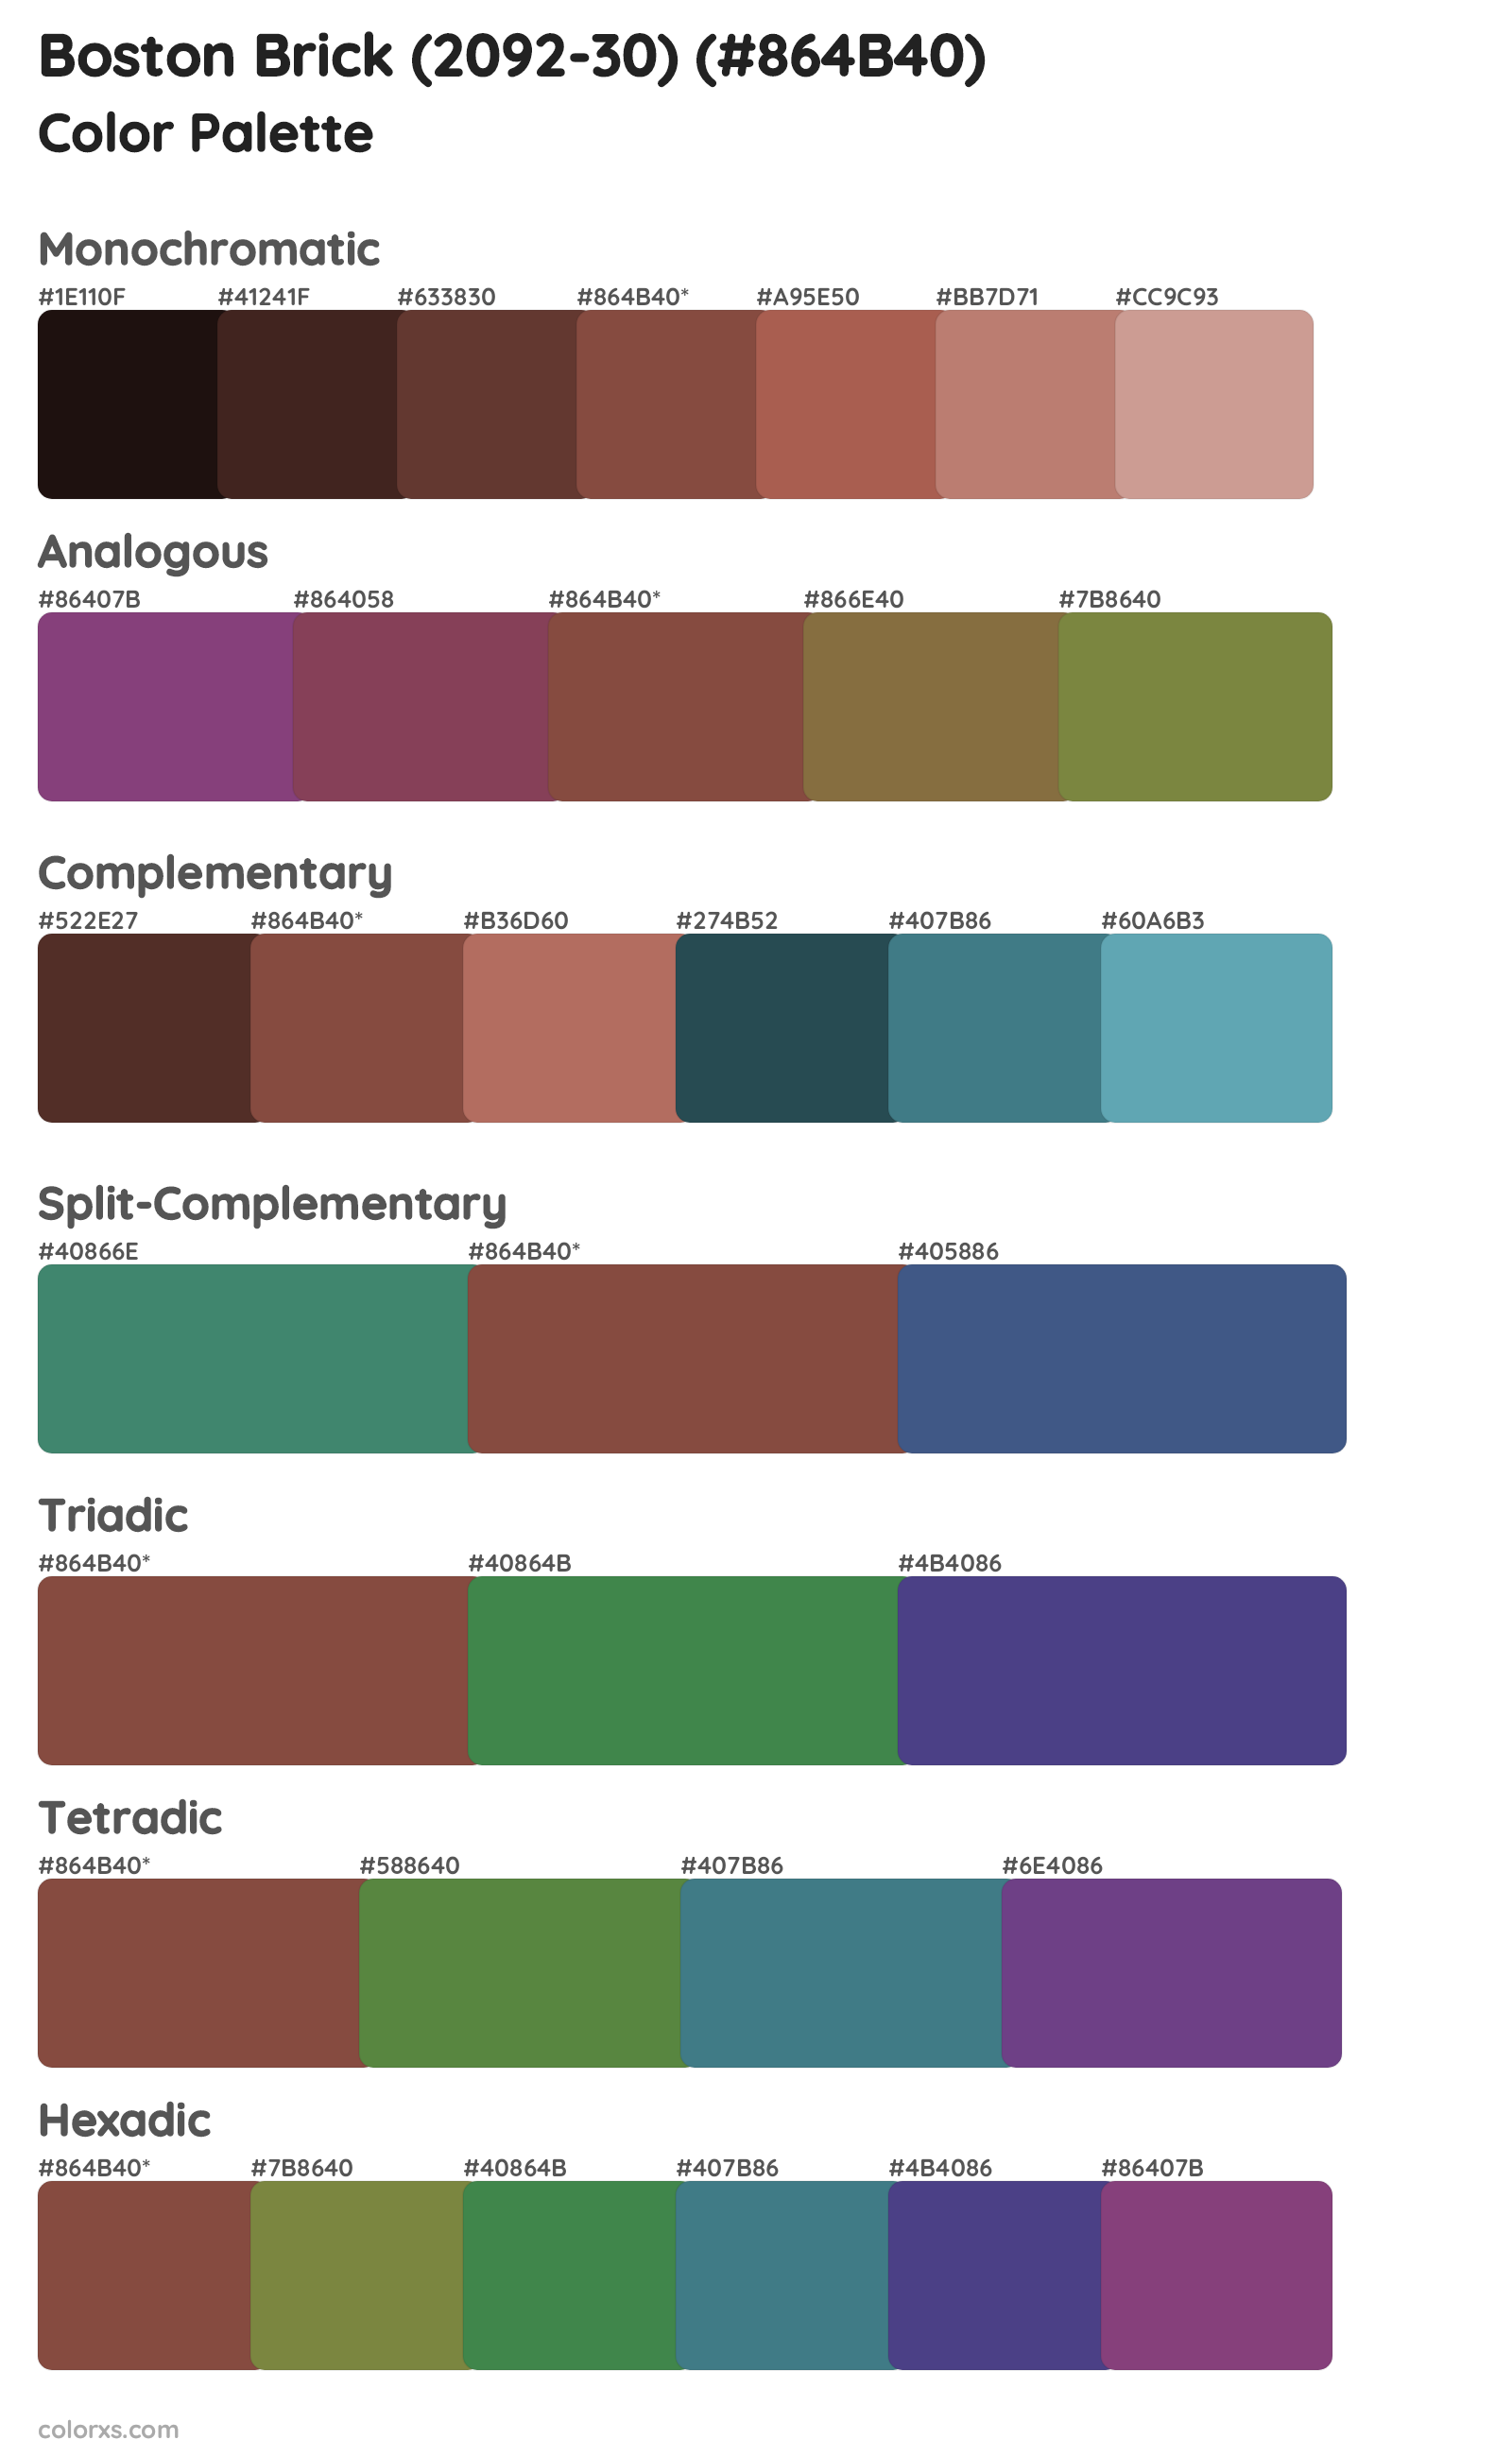 Boston Brick (2092-30) Color Scheme Palettes